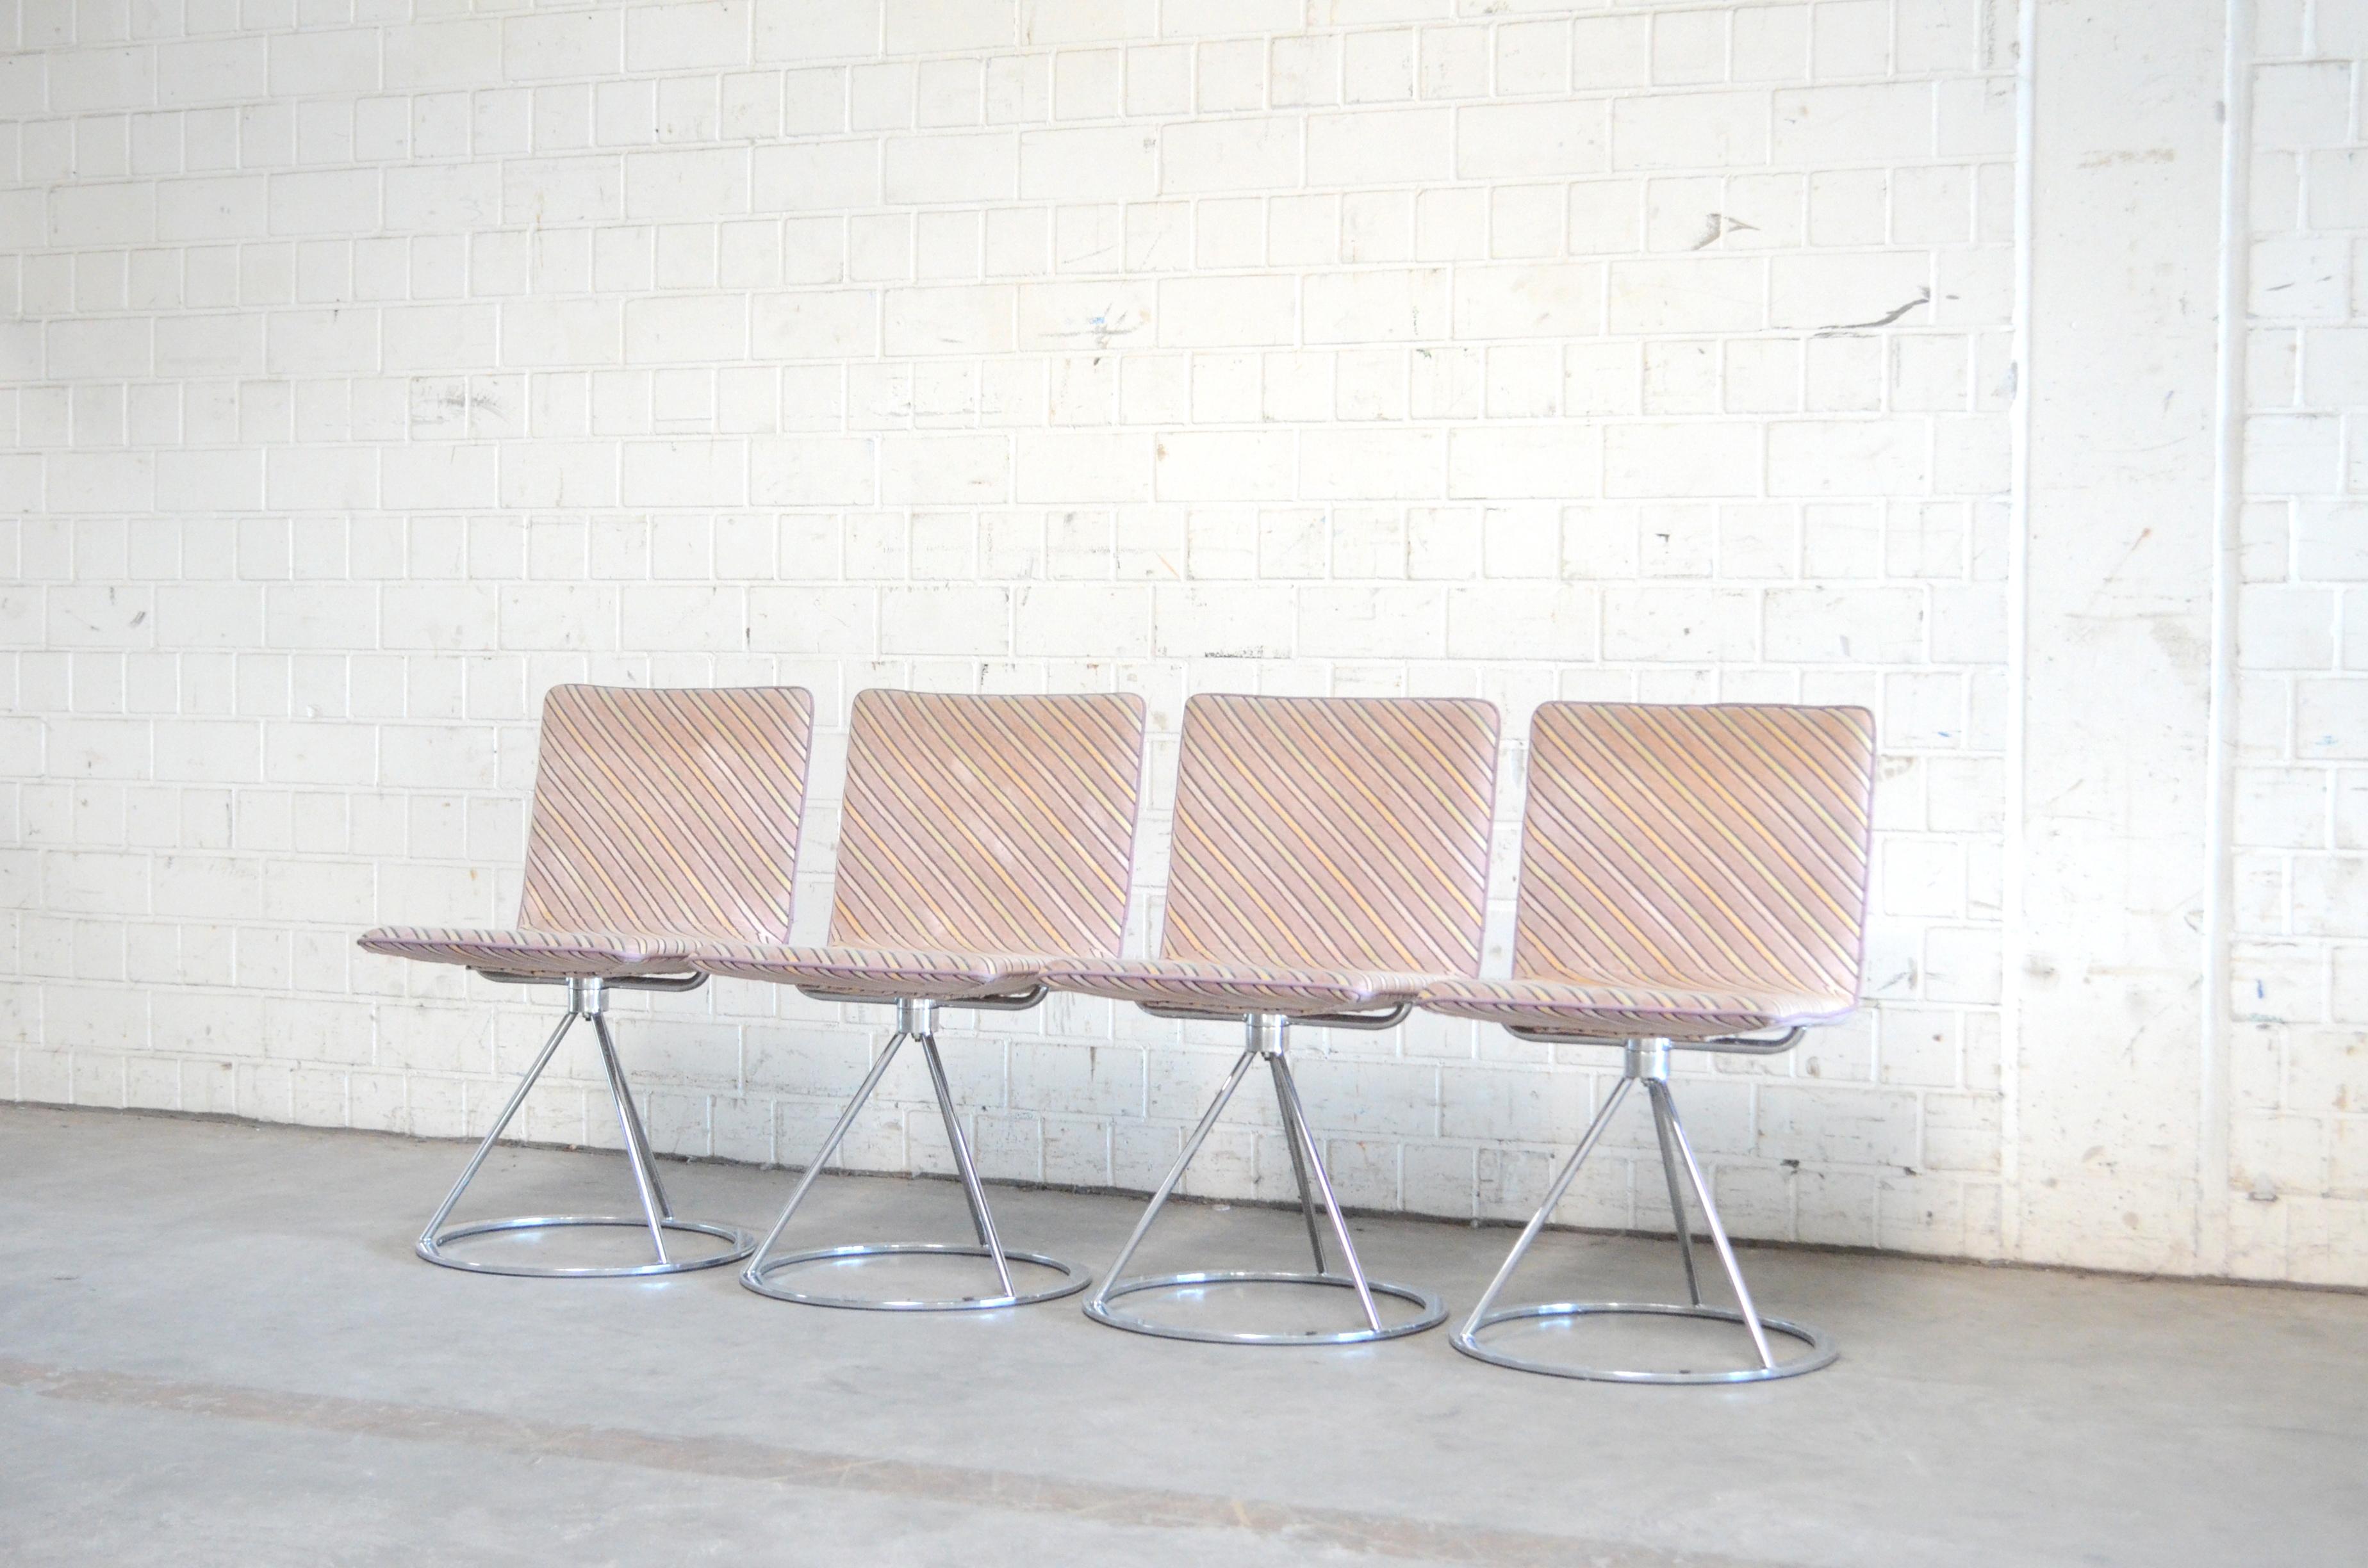 Ces chaises au design italien datent des années 1980. Elles ont été conçues par Salvati e Tresoldi et fabriquées par Saporiti Italia.
Chaise au design contemporain avec base rotative en acier chromé et assise rembourrée.
Le tissu est un magnifique